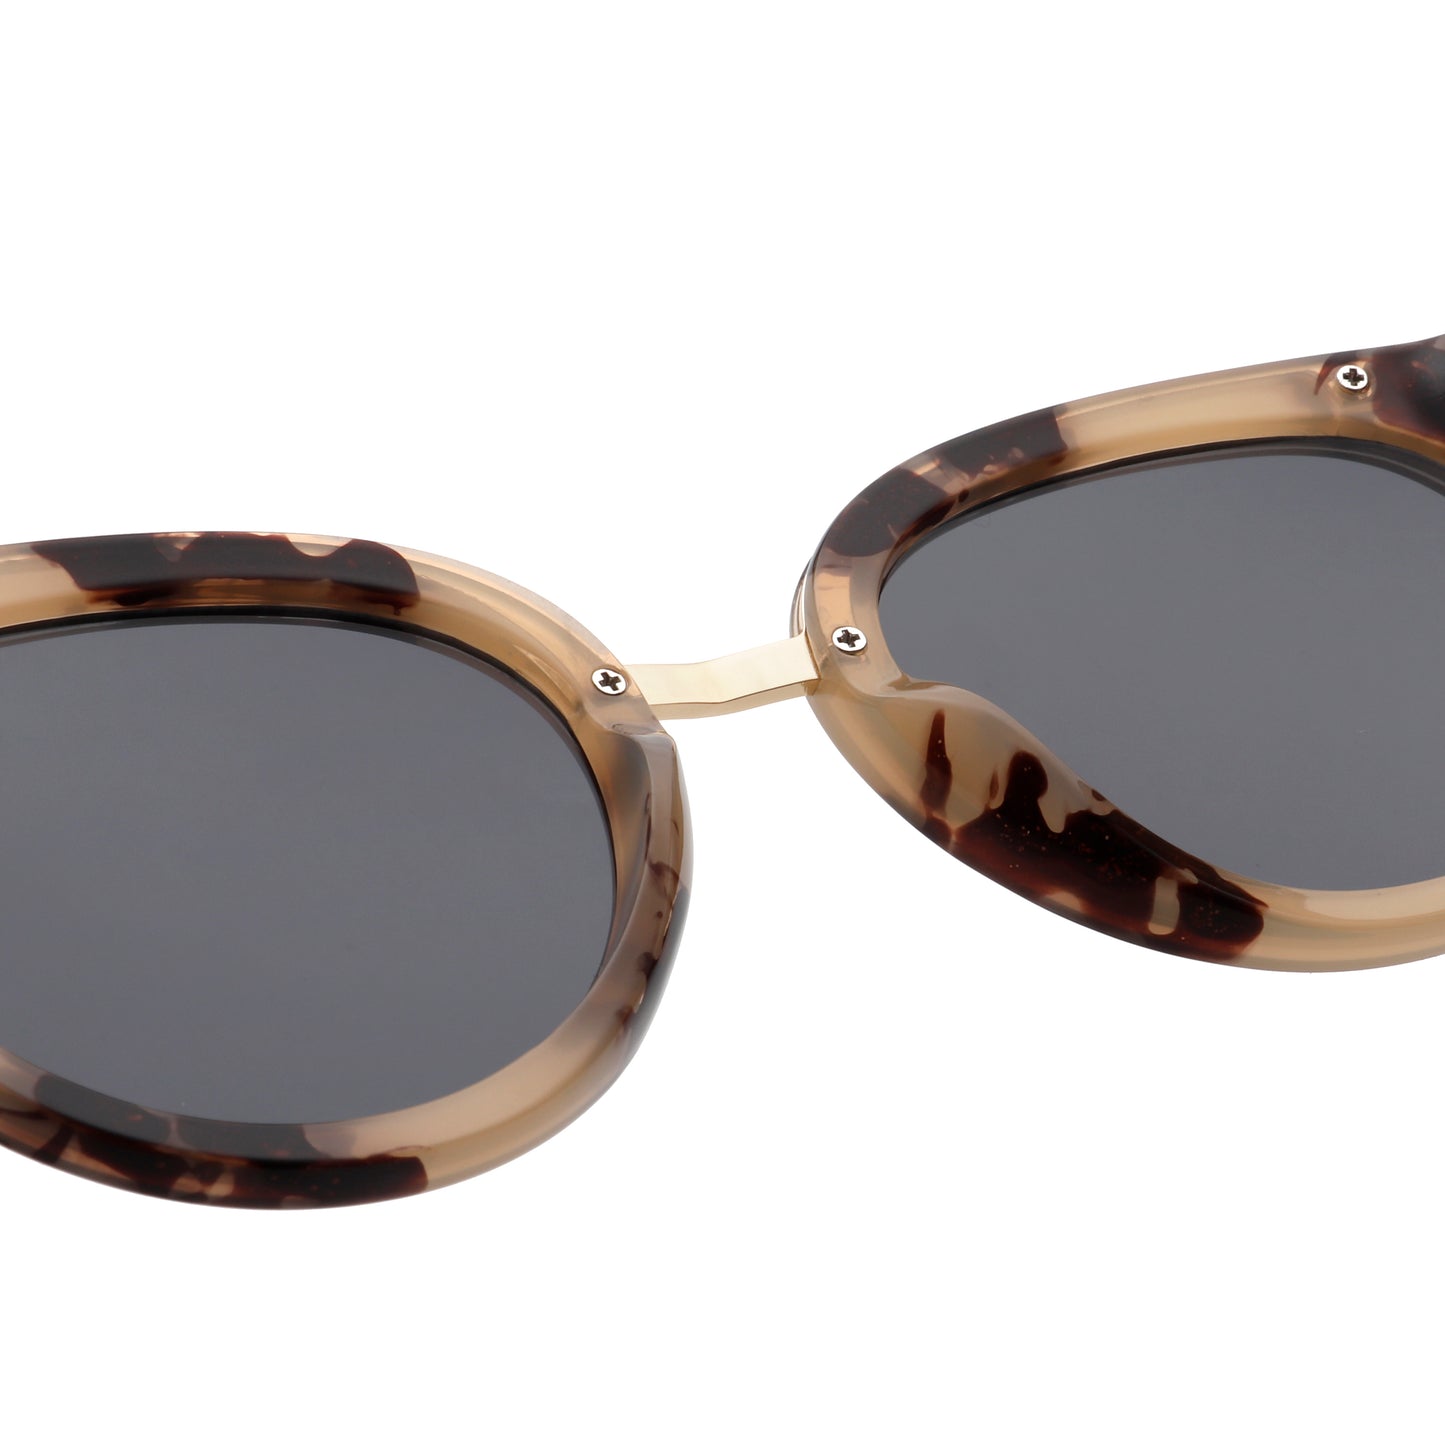 A.Kjaerbede Jolie Sunglasses in Hornet color